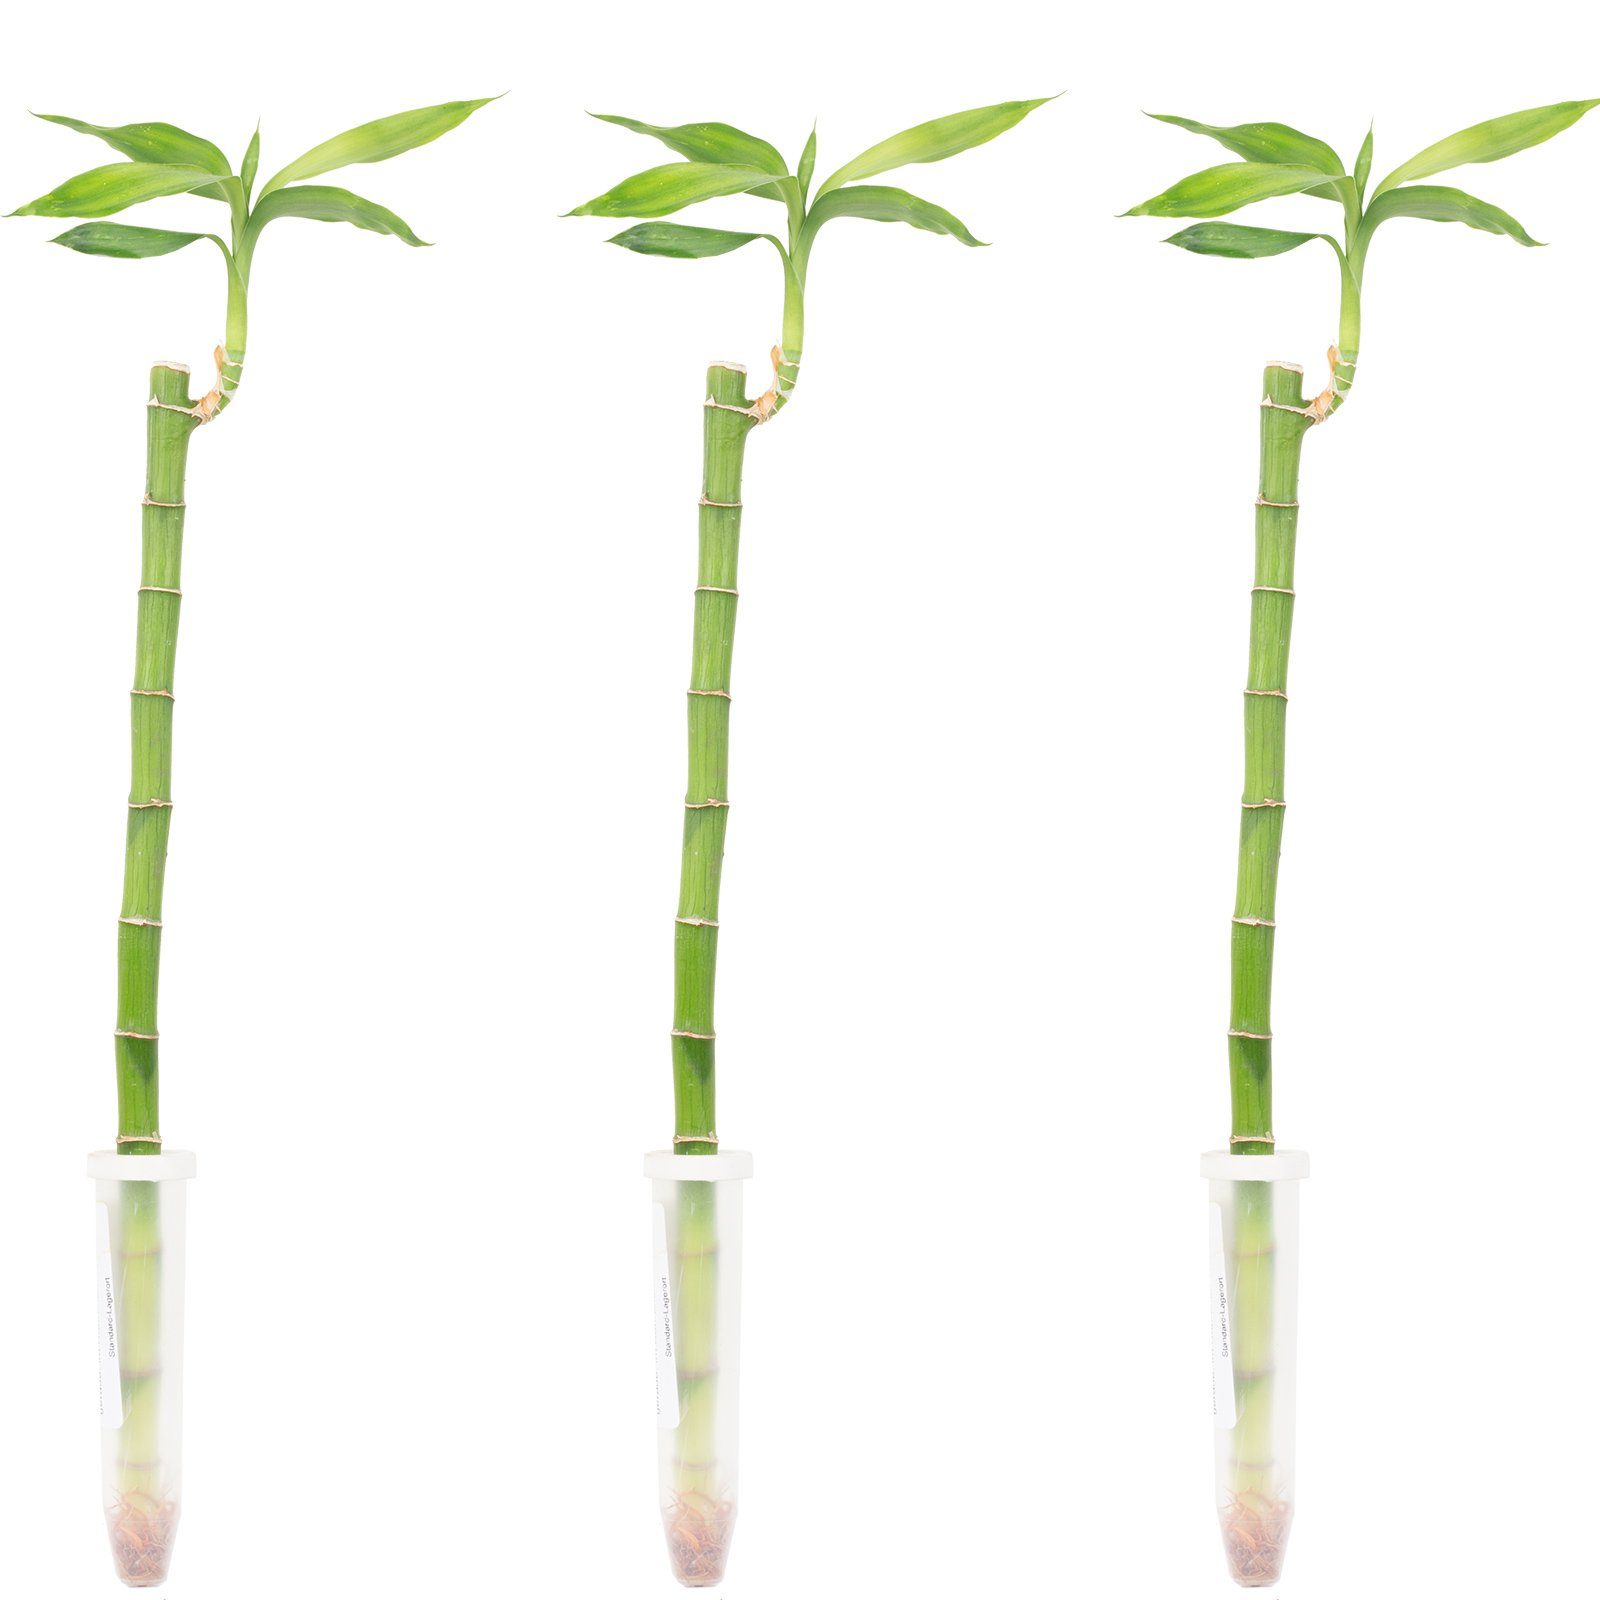 Flowerbox Blumentopf »bepflanzt mit Zimmerpflanze 3er-Set Glücksbambus  gerade- Höhe ca. 50 cm, Topf-Ø 5 cm - Lucky Bamboo« online kaufen | OTTO